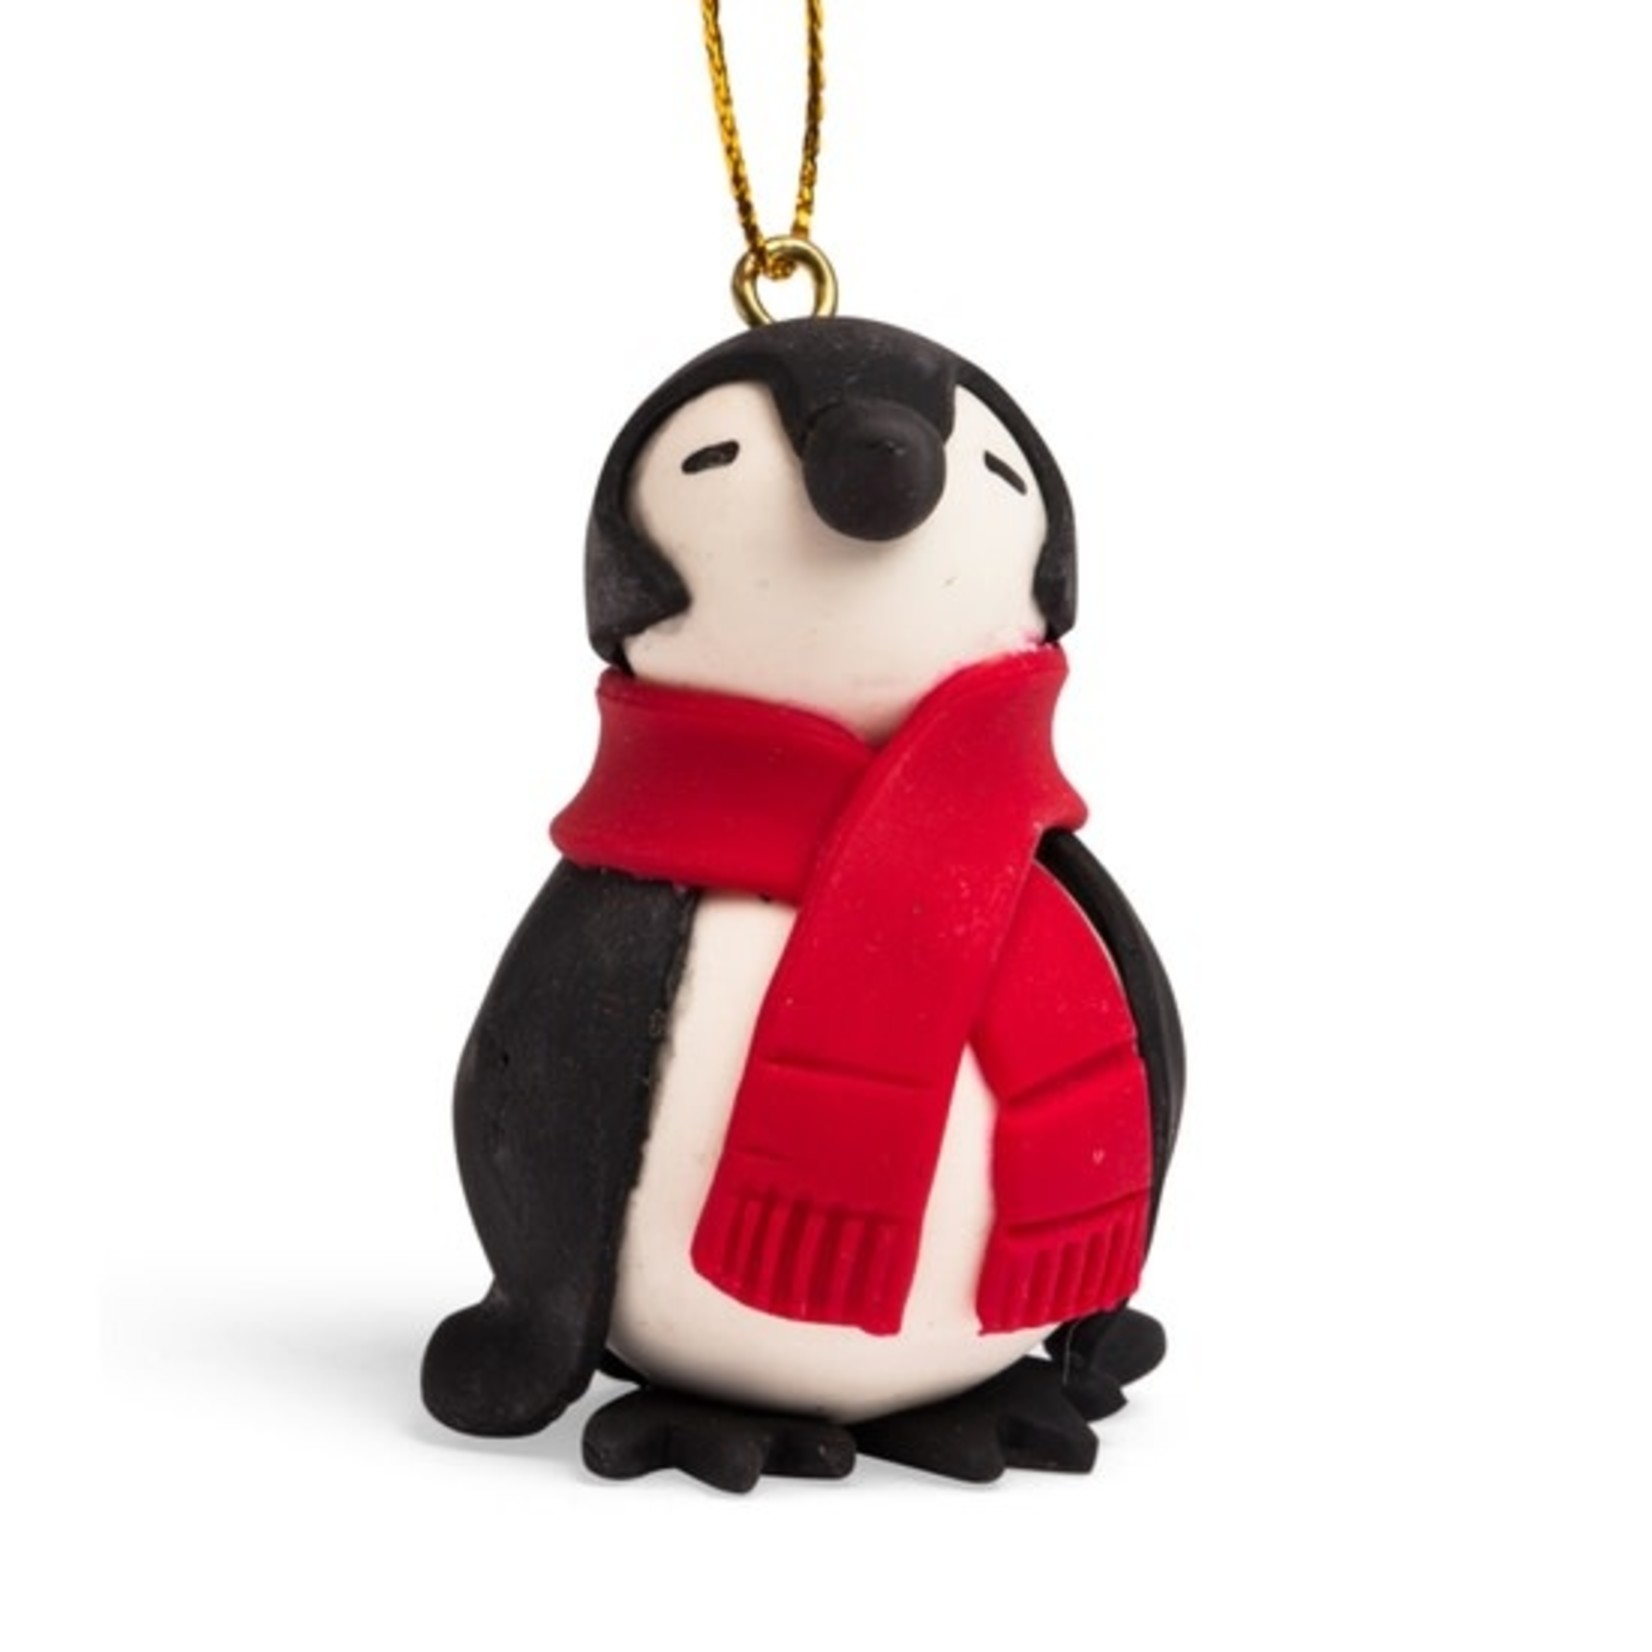 Ten Thousand Villages USA Chilly Penguin Ornament, Ecuador